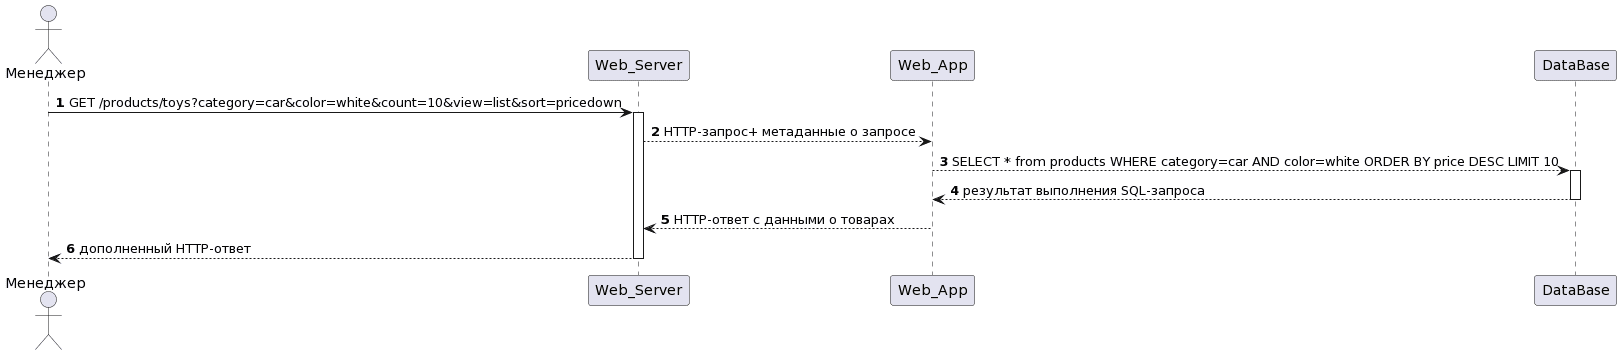 UML диаграмма последовательности REST API